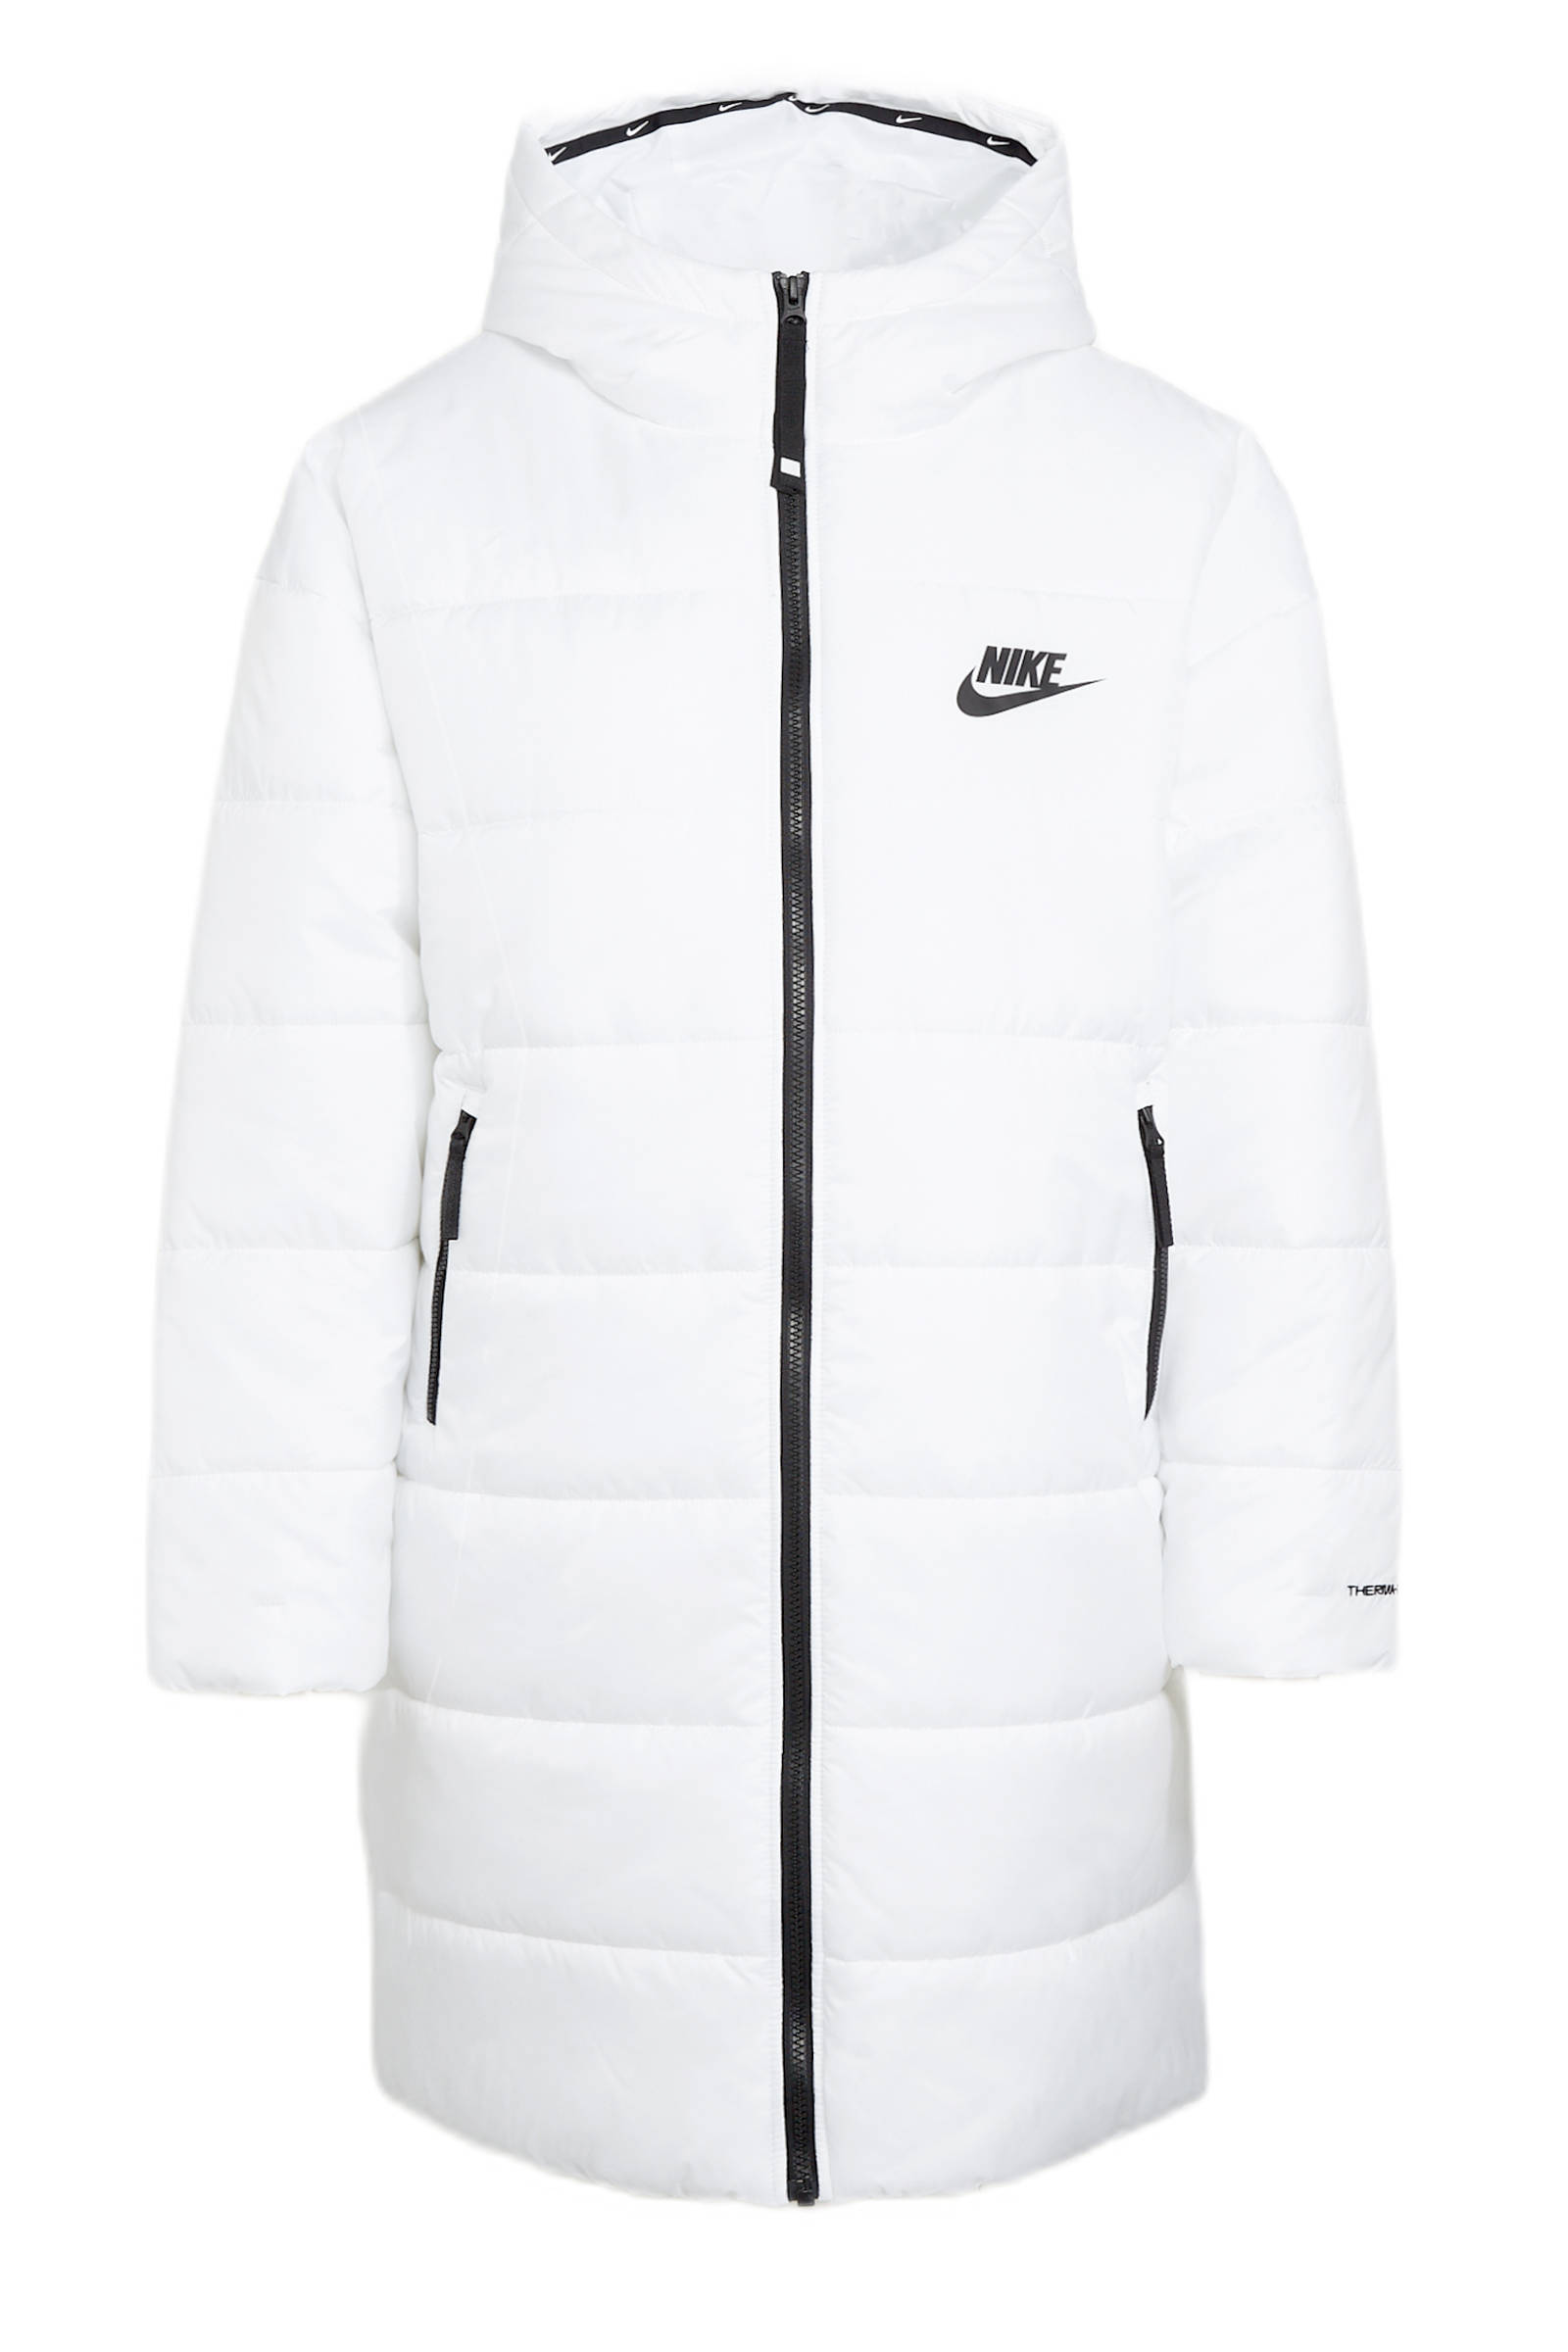 Nike Sportswear Therma FIT Repel Parka met capuchon voor dames White/Black/Black Dames online kopen